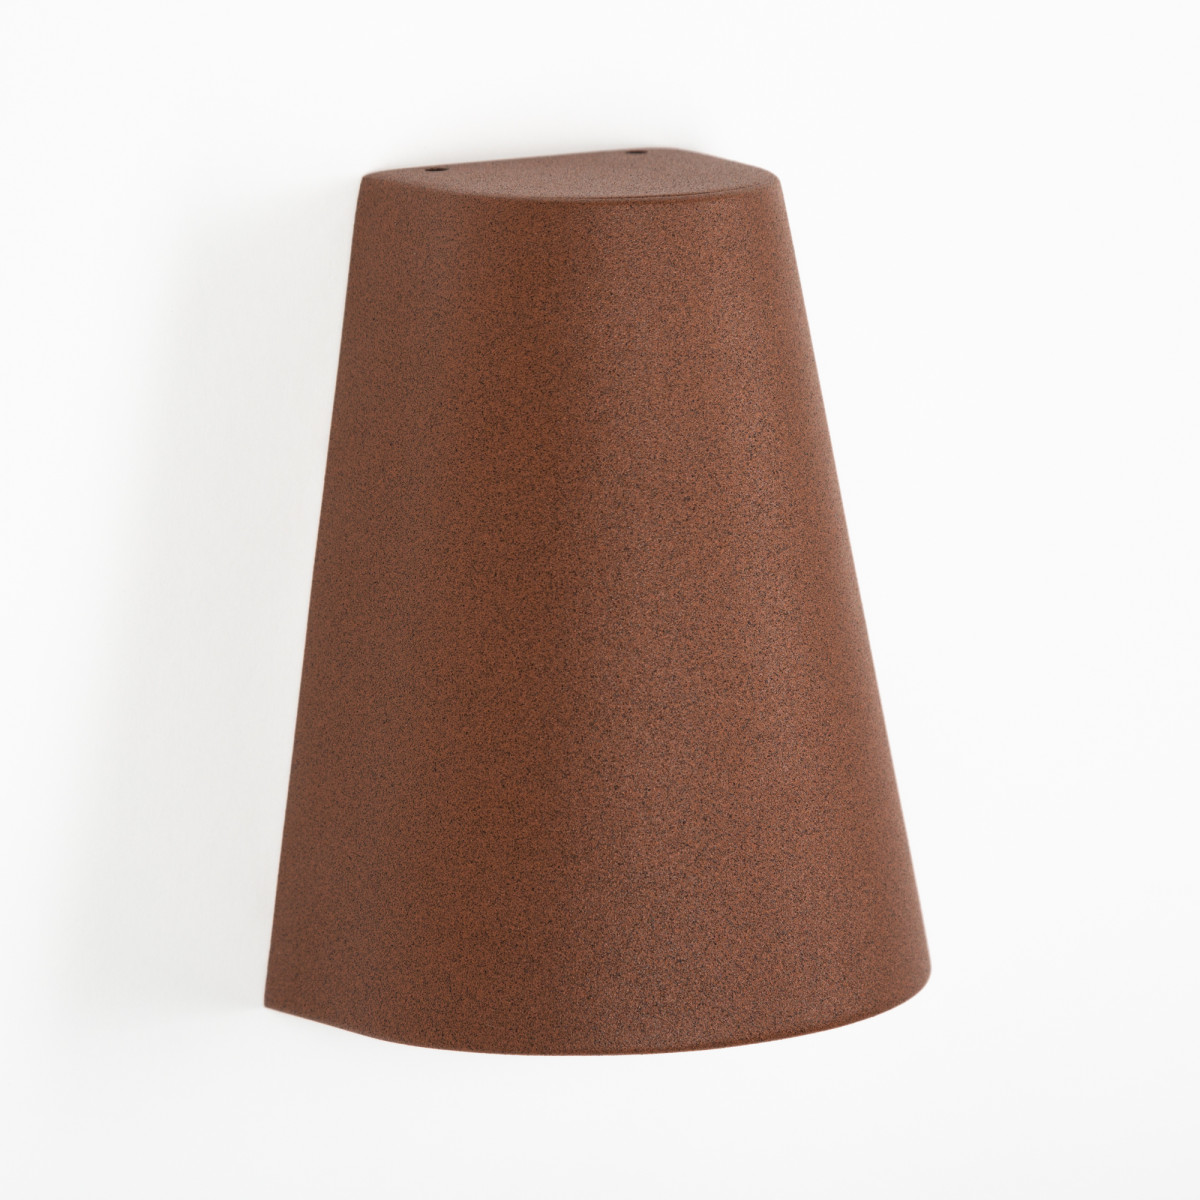 Buitenlamp Cone Downlighter, moderne wandverlichting voor indoor & outdoor, conisch vormgegeven in mooie roest kleur, corten staal kleur, KS kwaliteitsverlichting